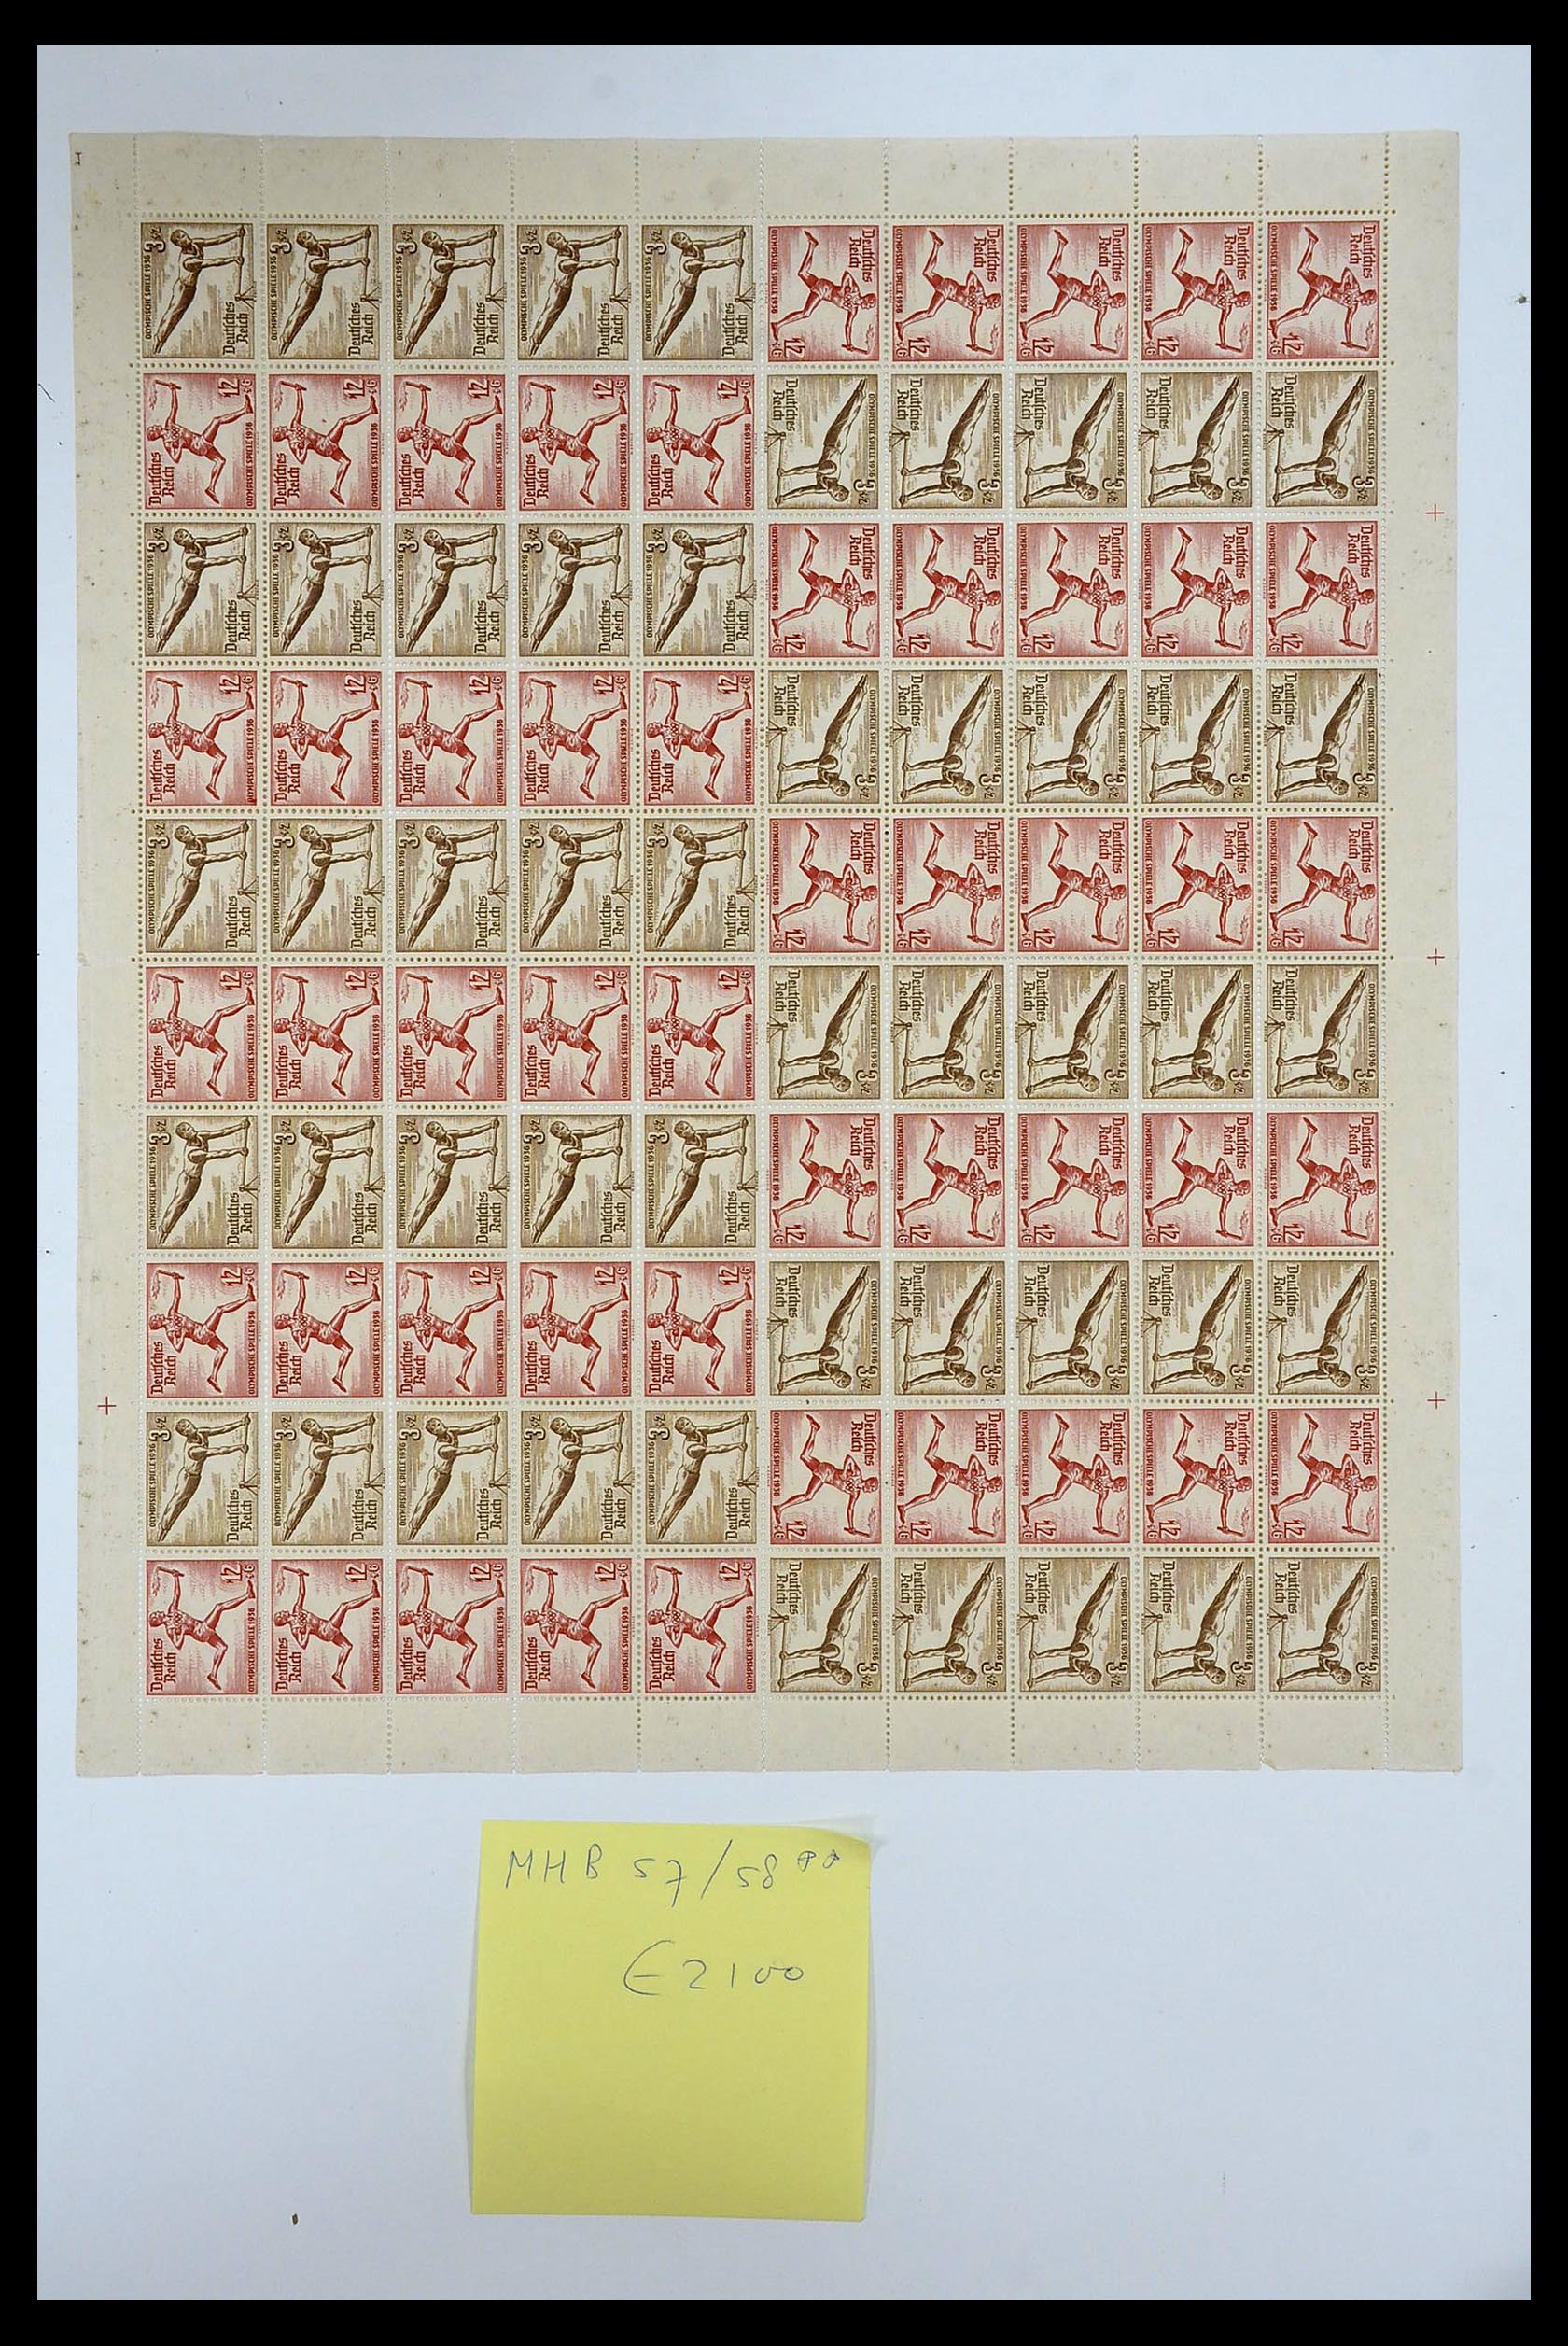 35075 041 - Stamp Collection 35075 German Reich Markenheftchenbogen 1933-1941.